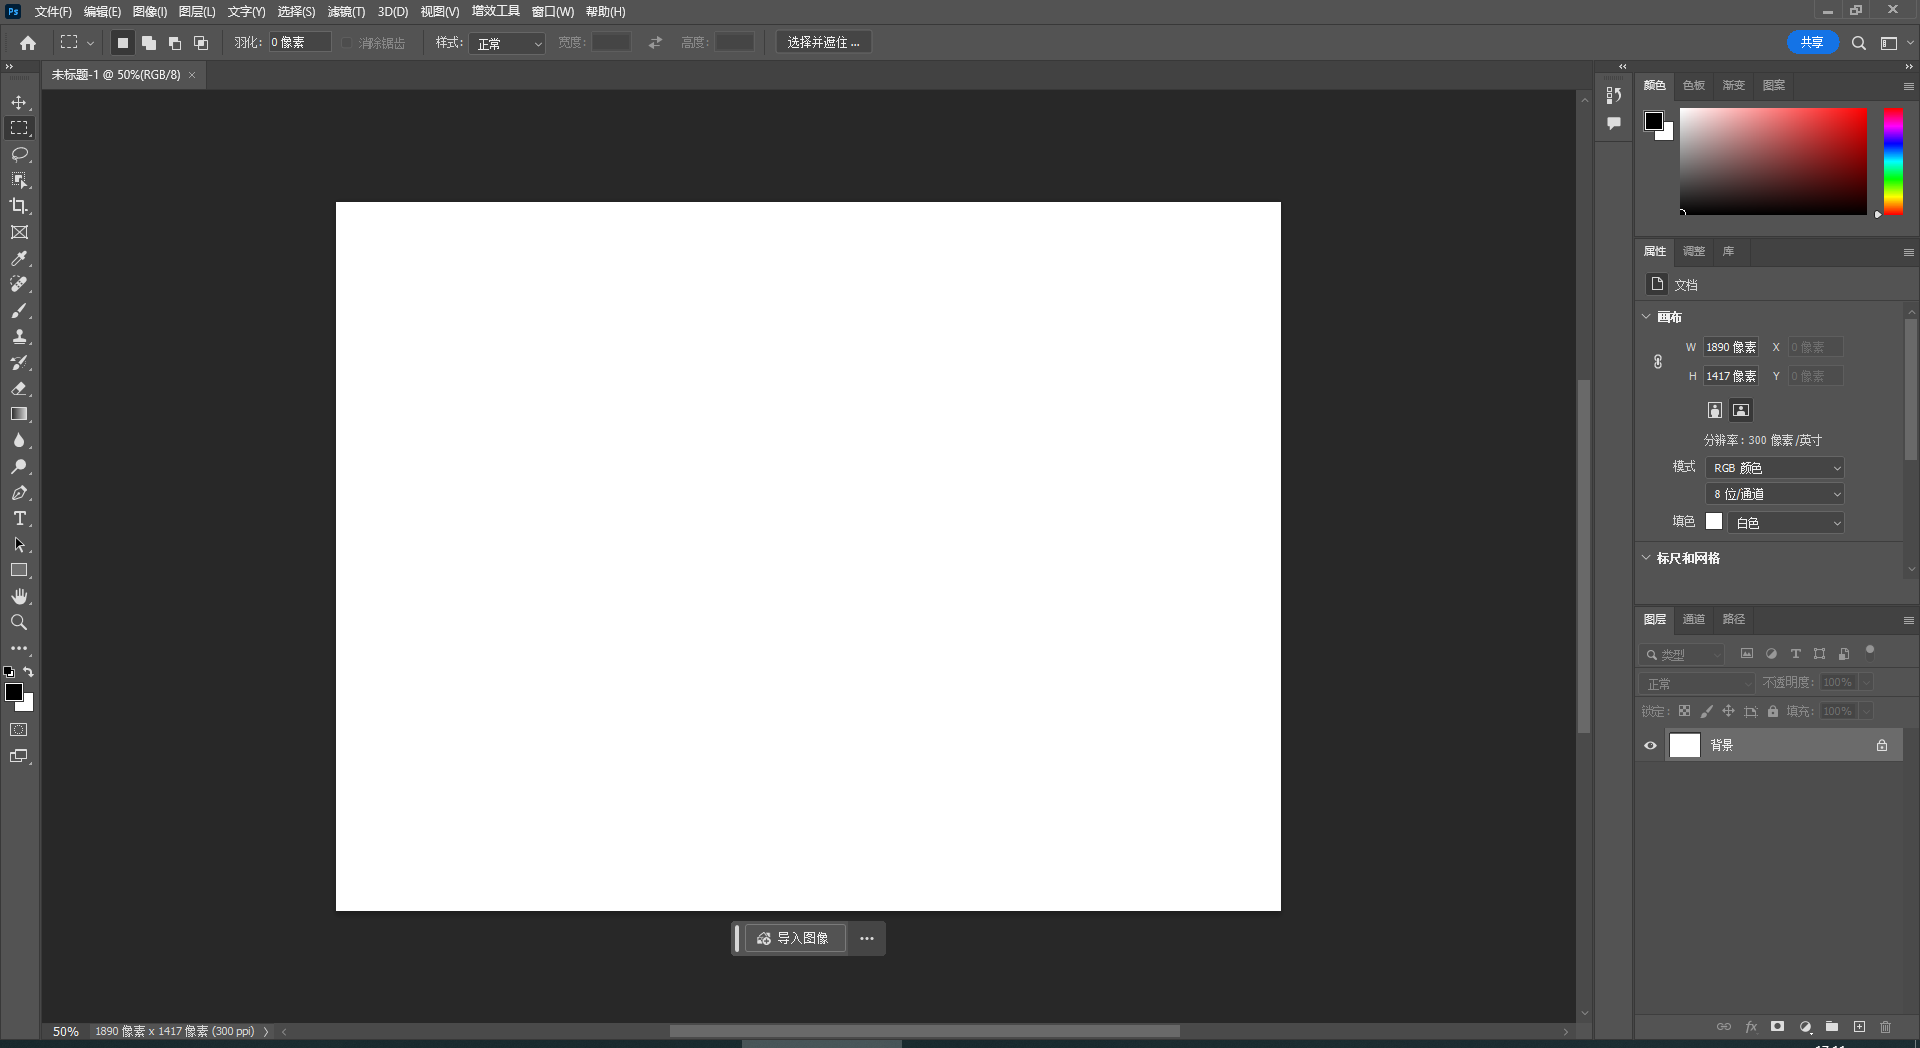 Adobe Photoshop 2024 v25.0.0.37 free instal